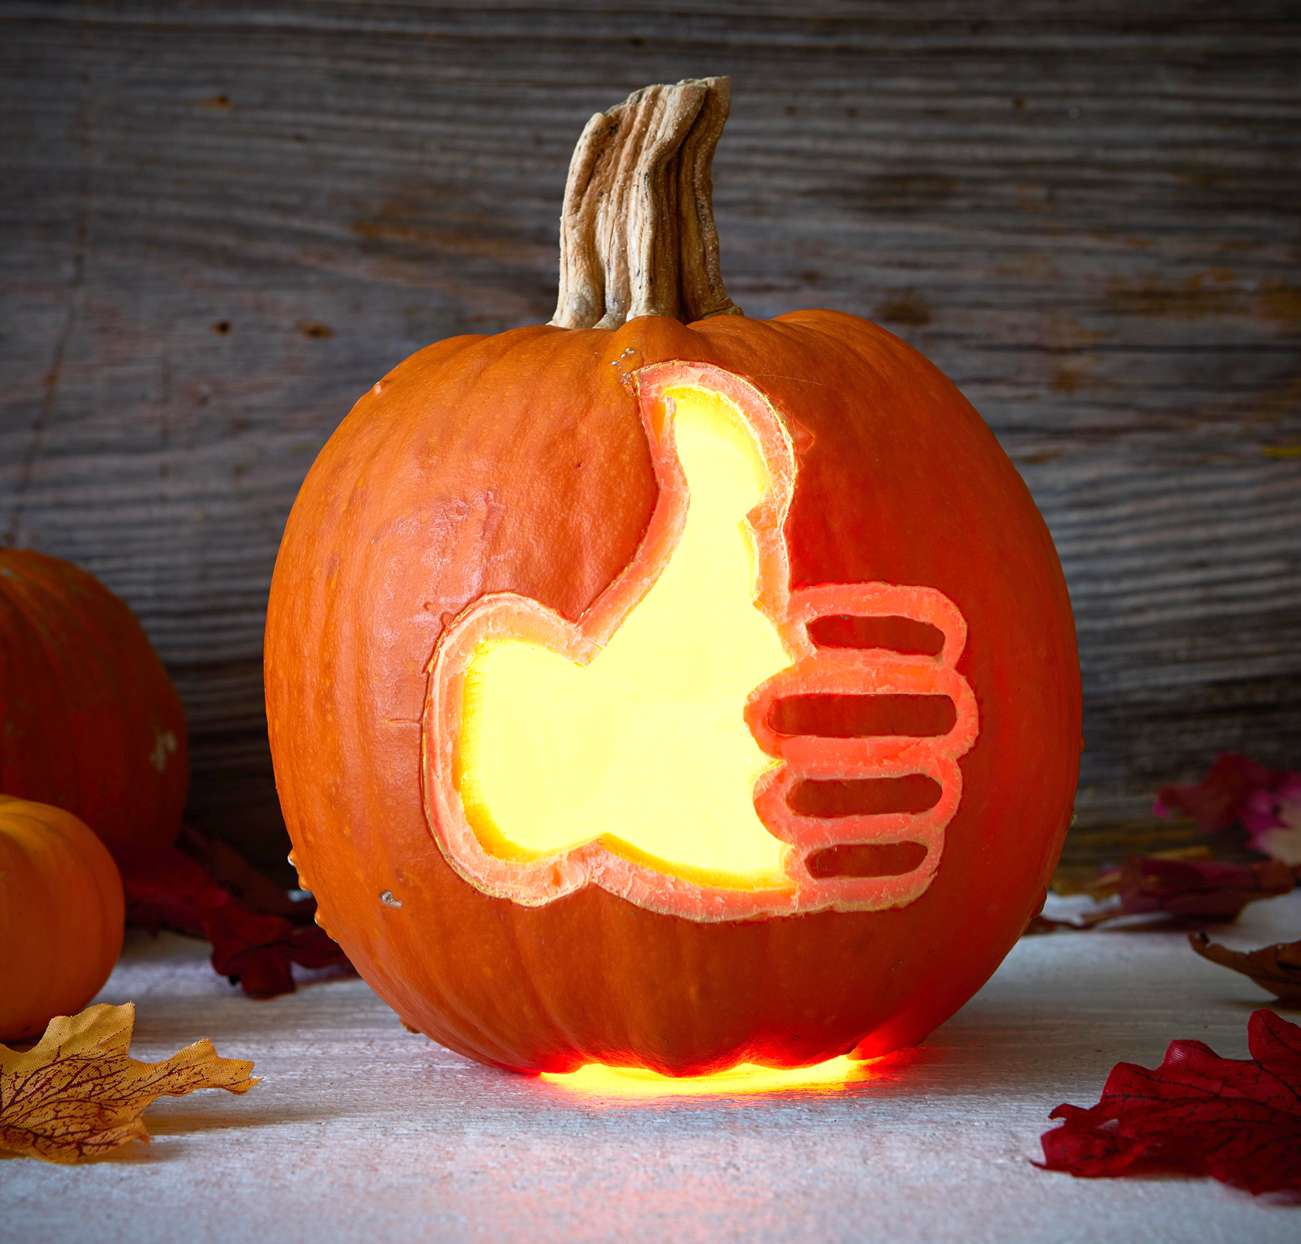 carved pumpkin thumbs up symbol lit inside